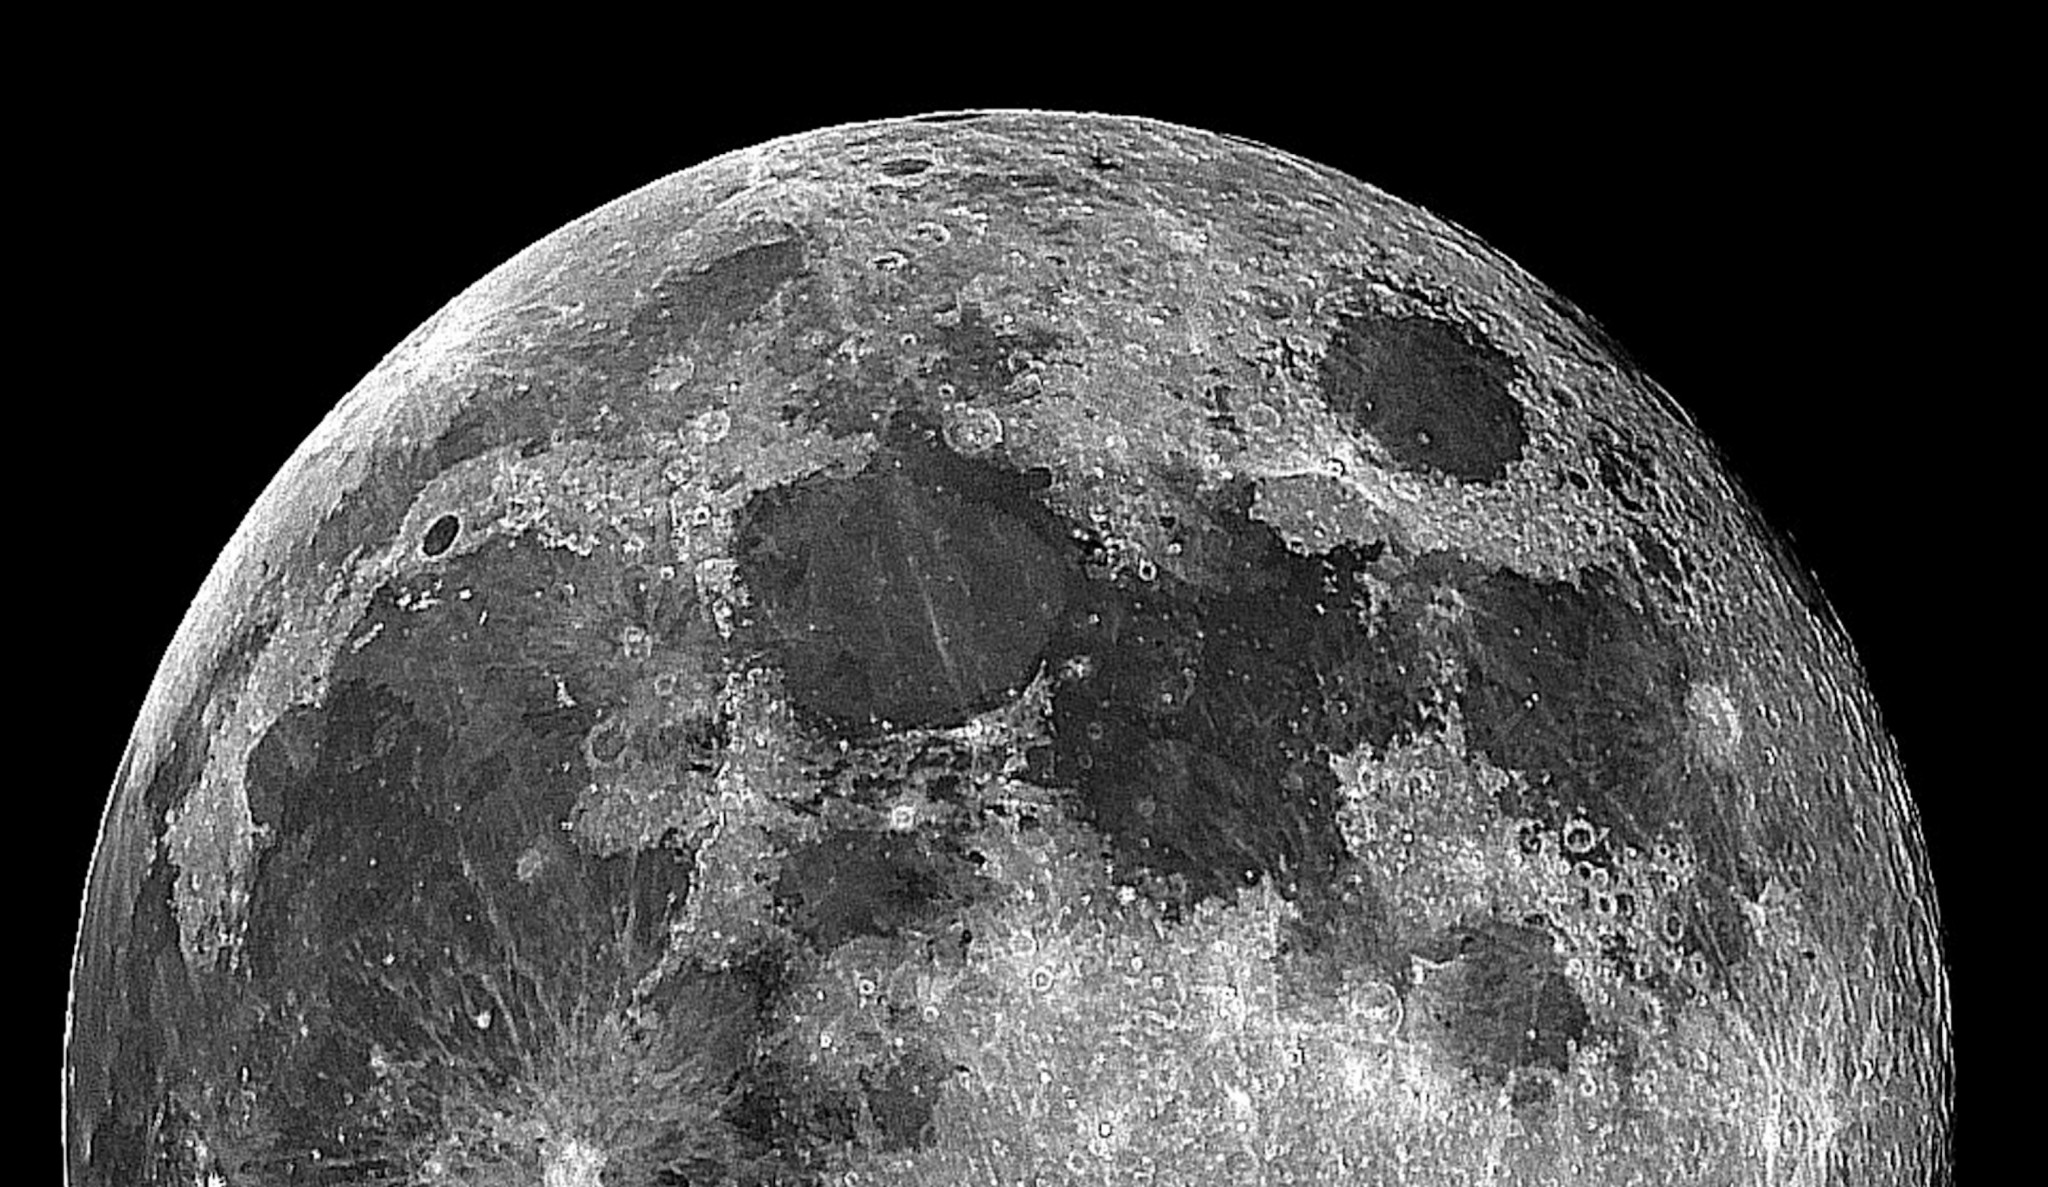 月壁紙hd,月,黒と白,モノクロ写真,天体,モノクローム